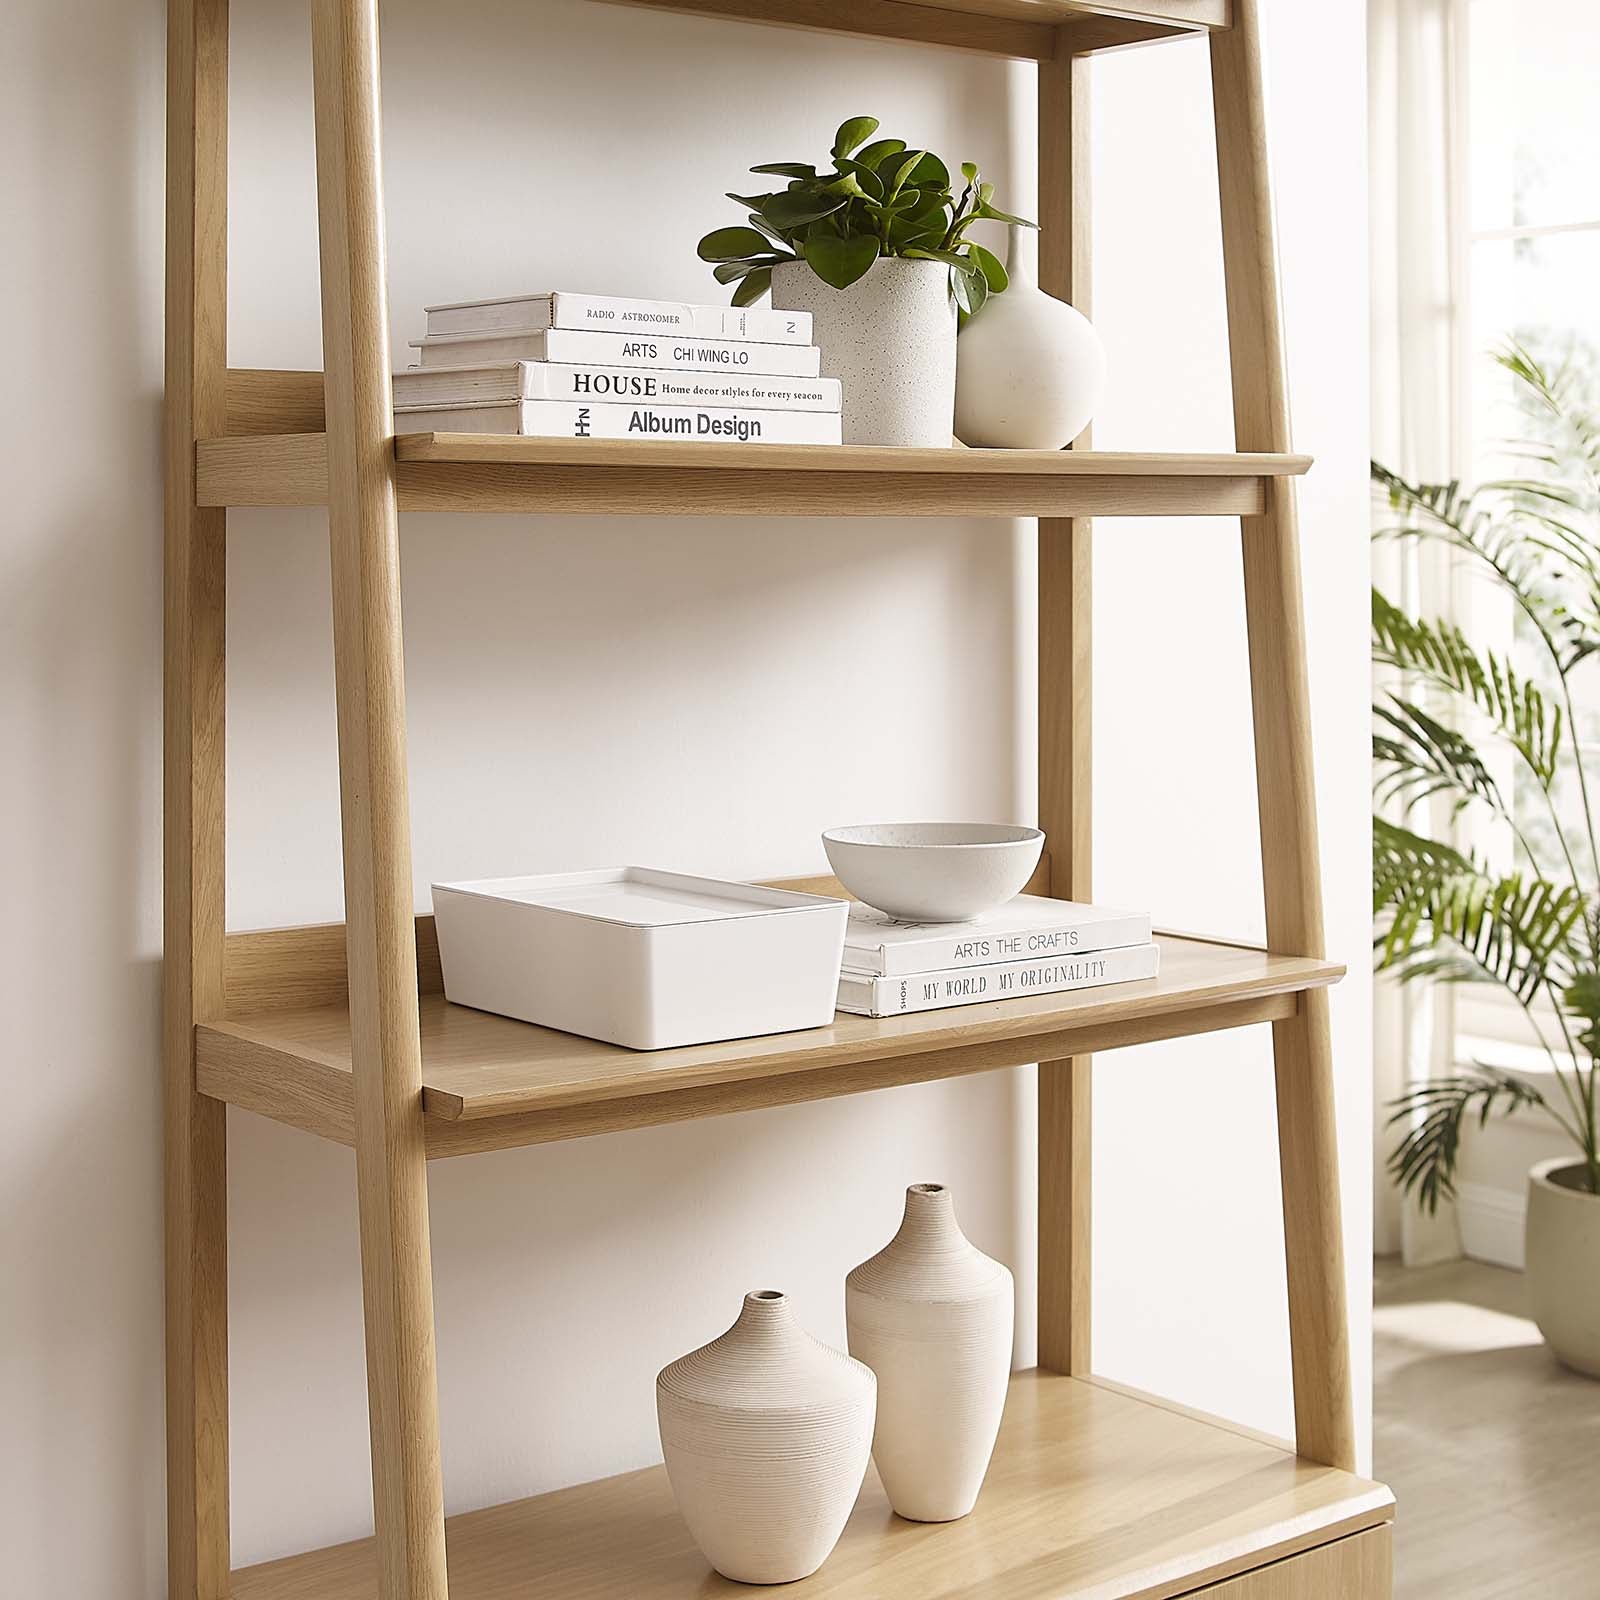 Bixby 33" Bookshelf-Bookcase-Modway-Wall2Wall Furnishings